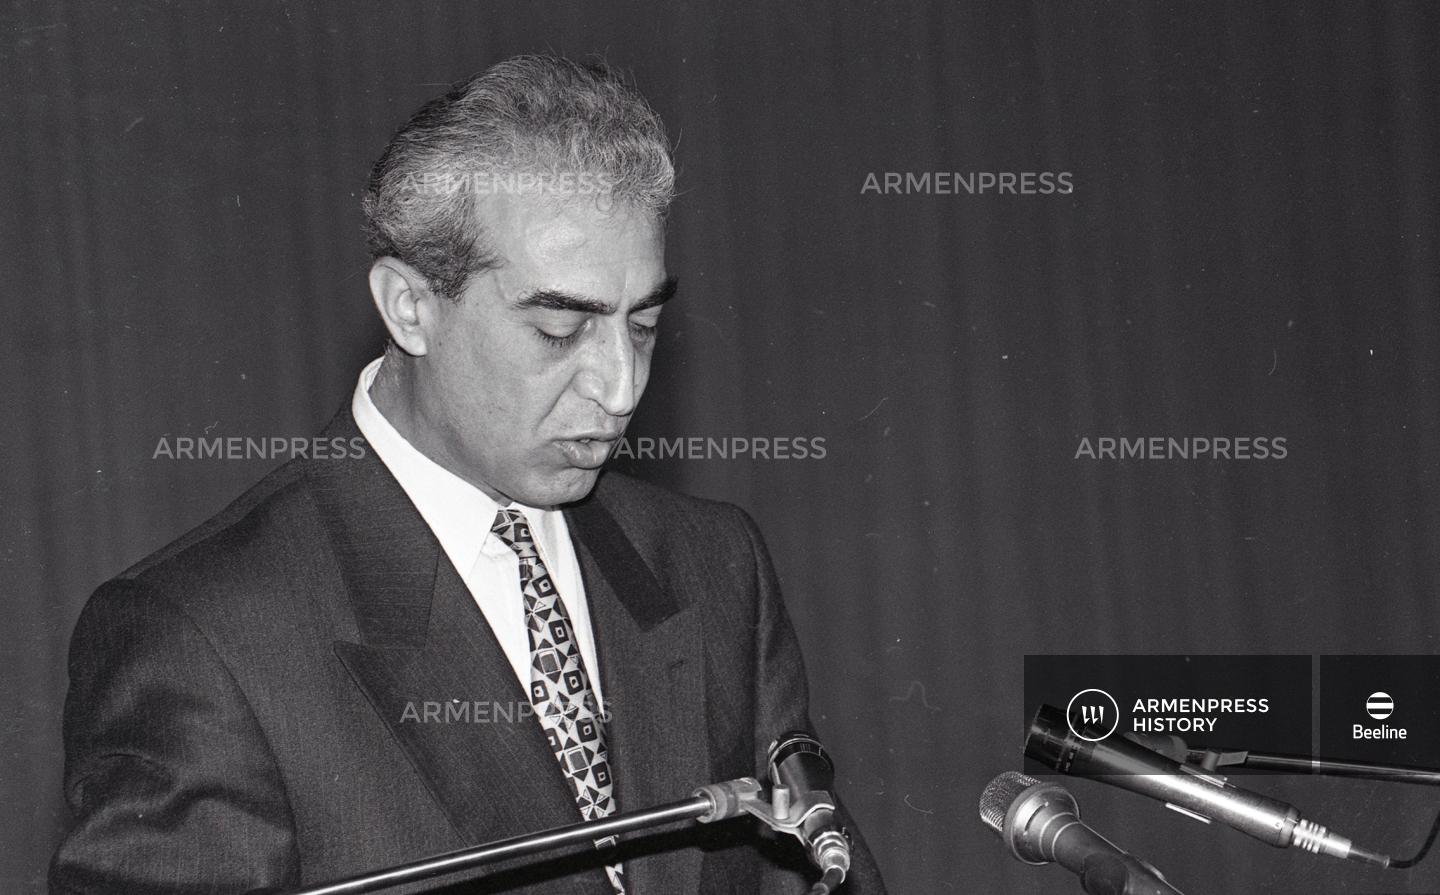 Հայ քաղաքական, պետական գործիչ Աշոտ Նավասարդյան